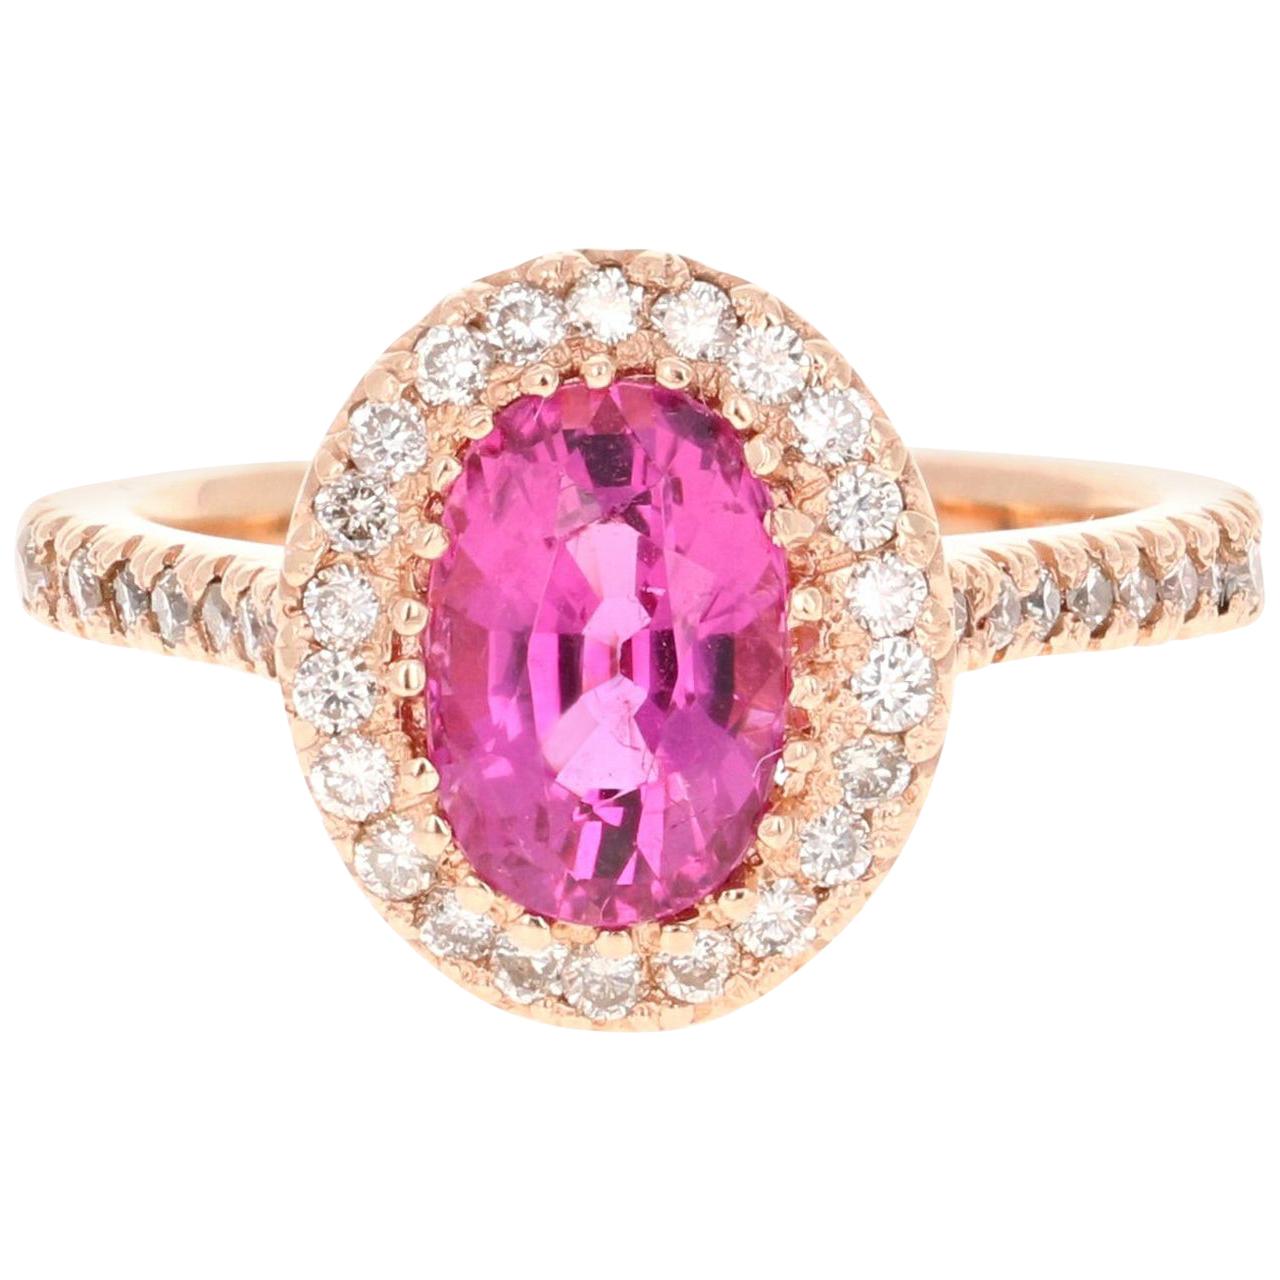 2.62 Carat Pink Tourmaline Diamond 14 Karat Rose Gold Engagement Ring For Sale